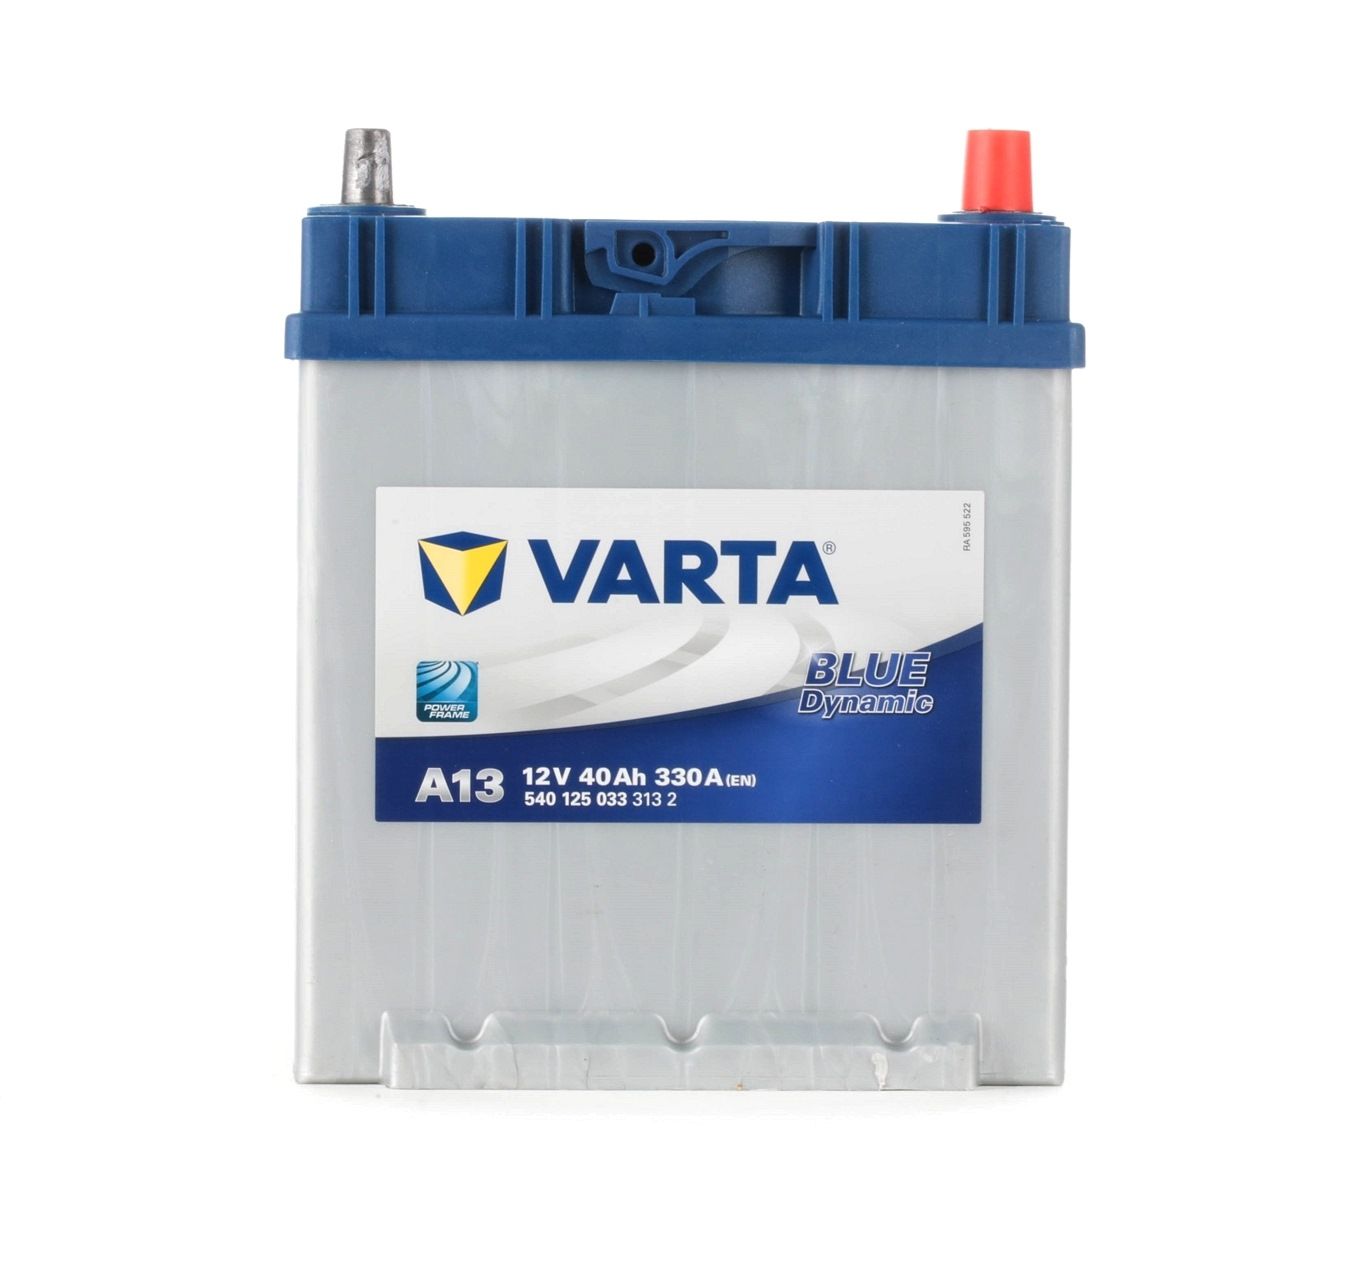 A13 VARTA BLUE dynamic 5401250333132 Batterie de démarrage 12V 40Ah 330A B01 Batterie au plomb